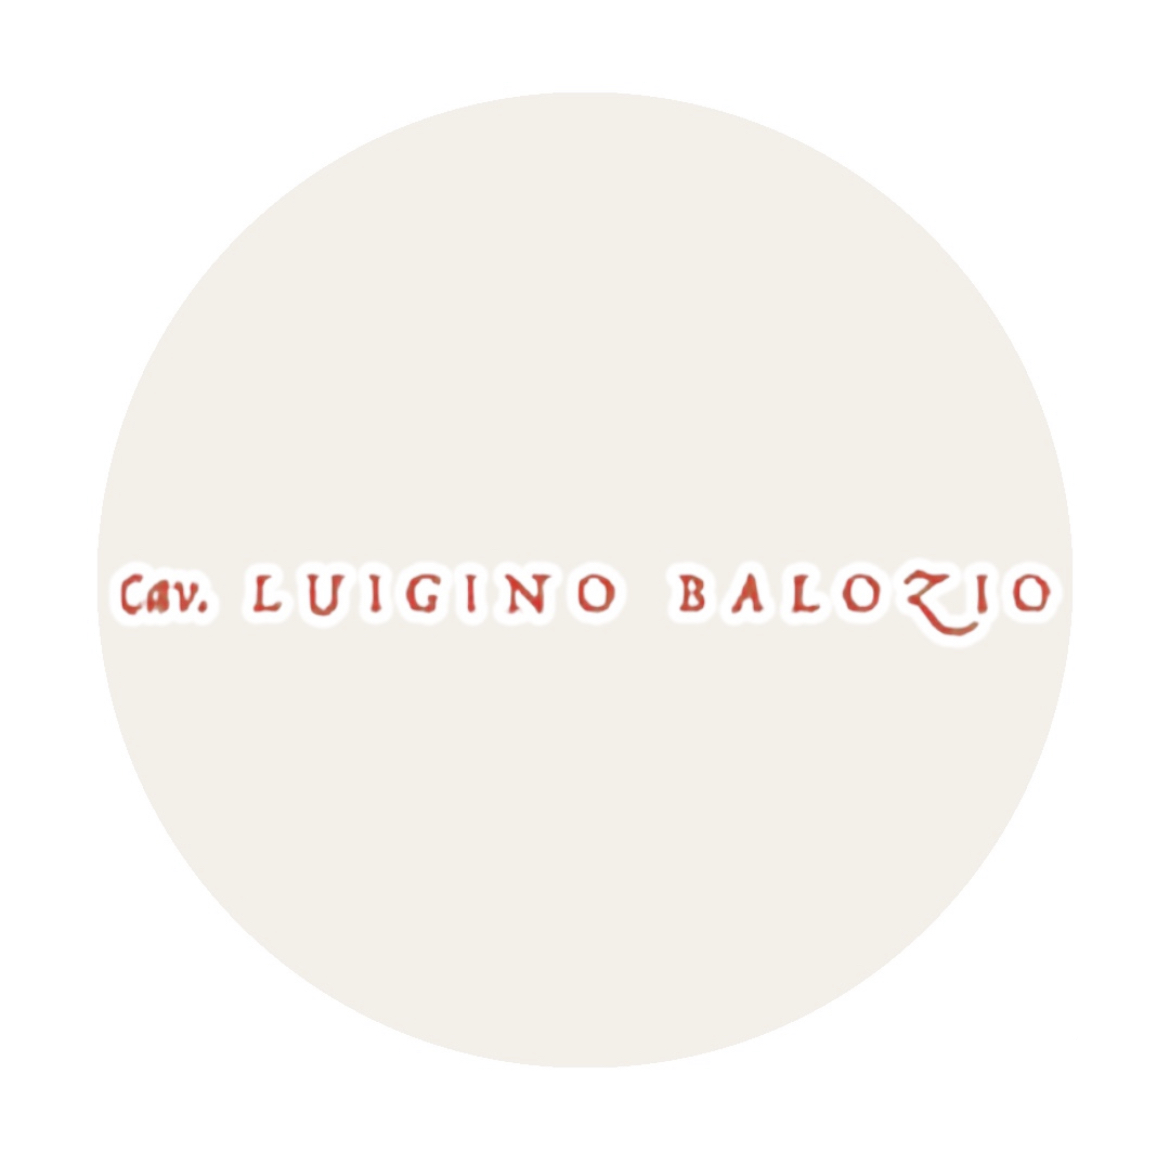 Luigino Balozio